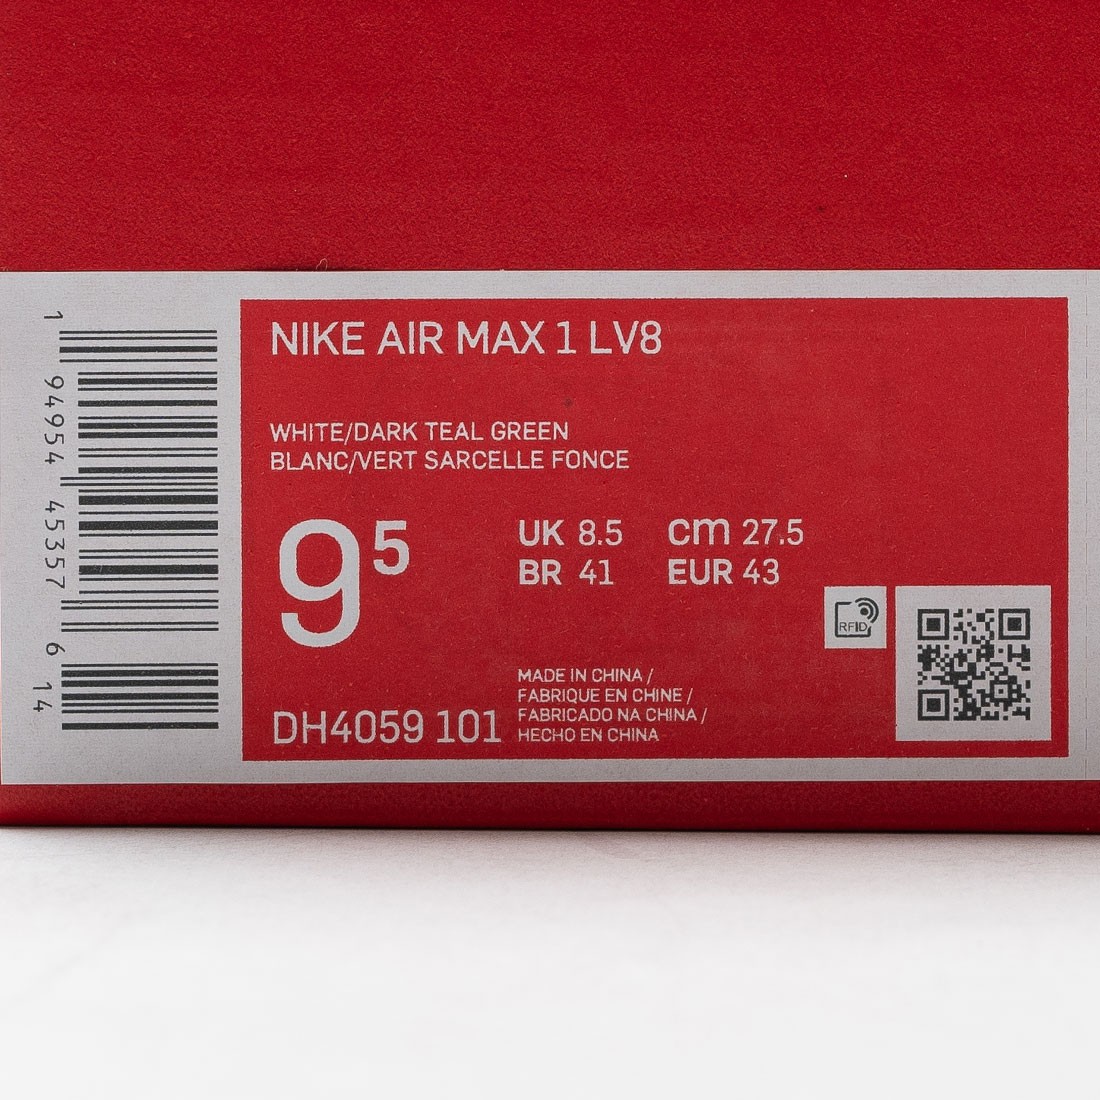 DH4059, Nike AIR MAX 1 LV8 DARK TEAL